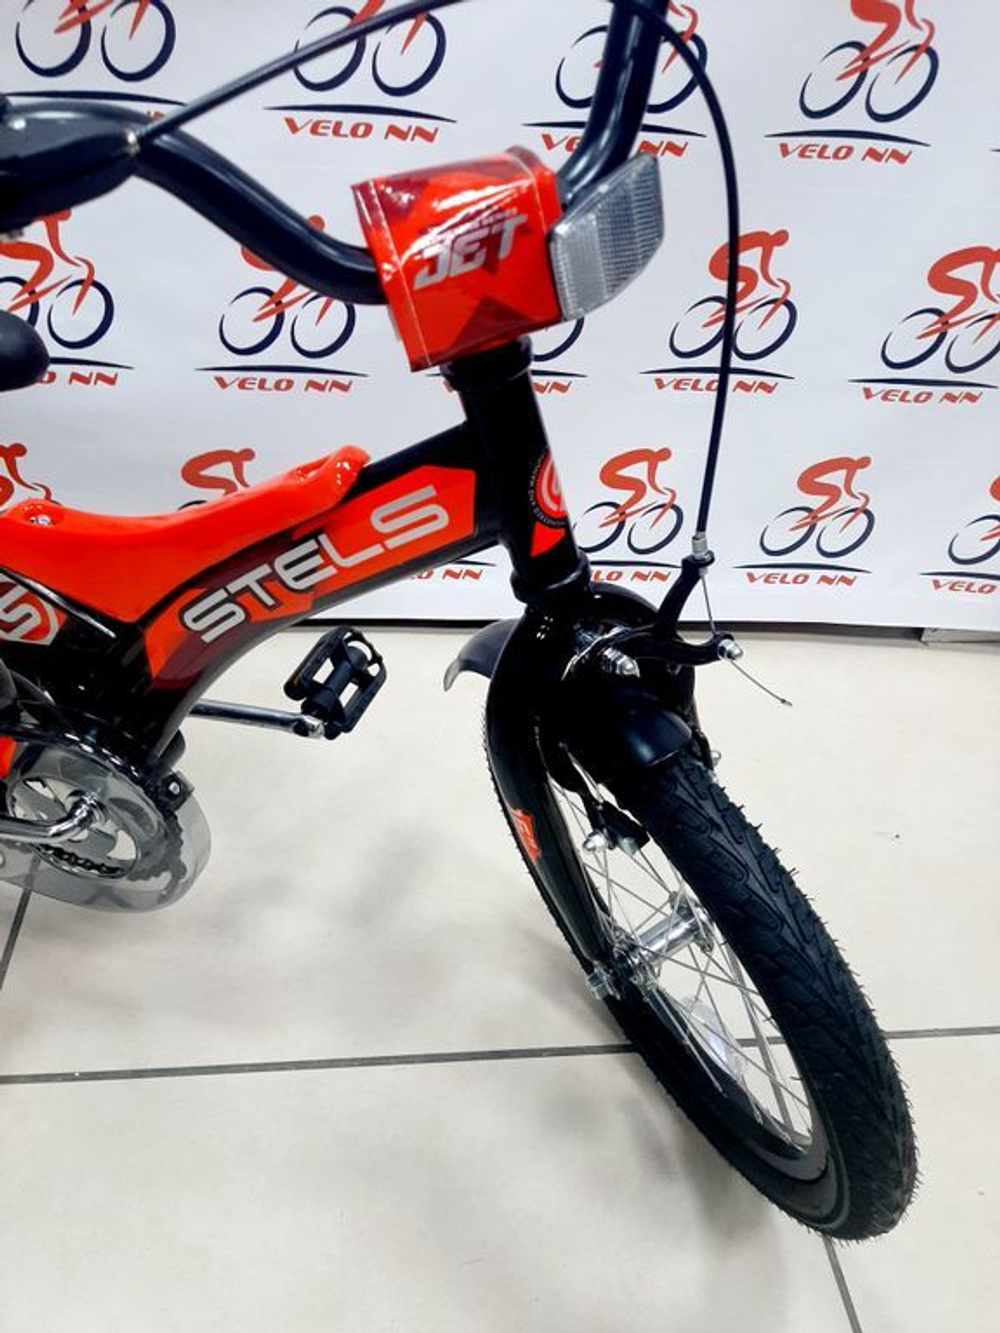 Велосипед Stels 16" Jet  арт.Z010/черно-оранжевый